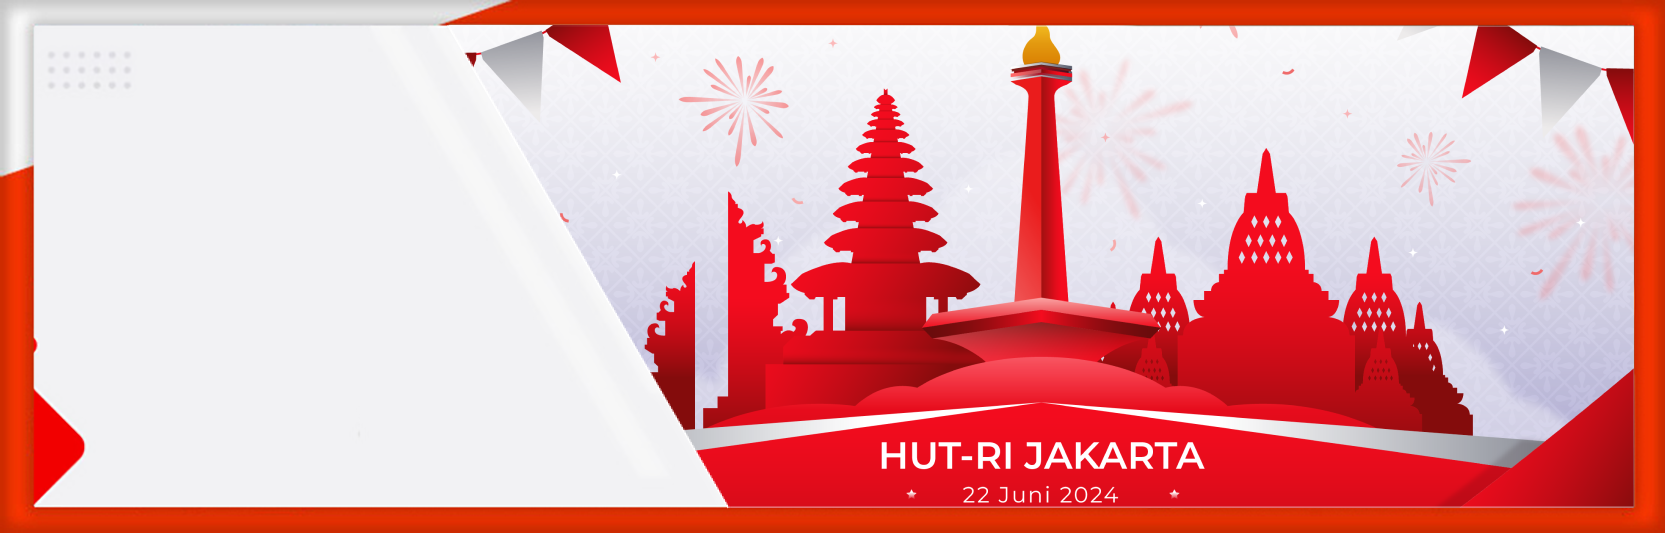 Perayaan HUT ke-497 Jakarta dengan Sejarah dan Semangat Kota Global Jakarta